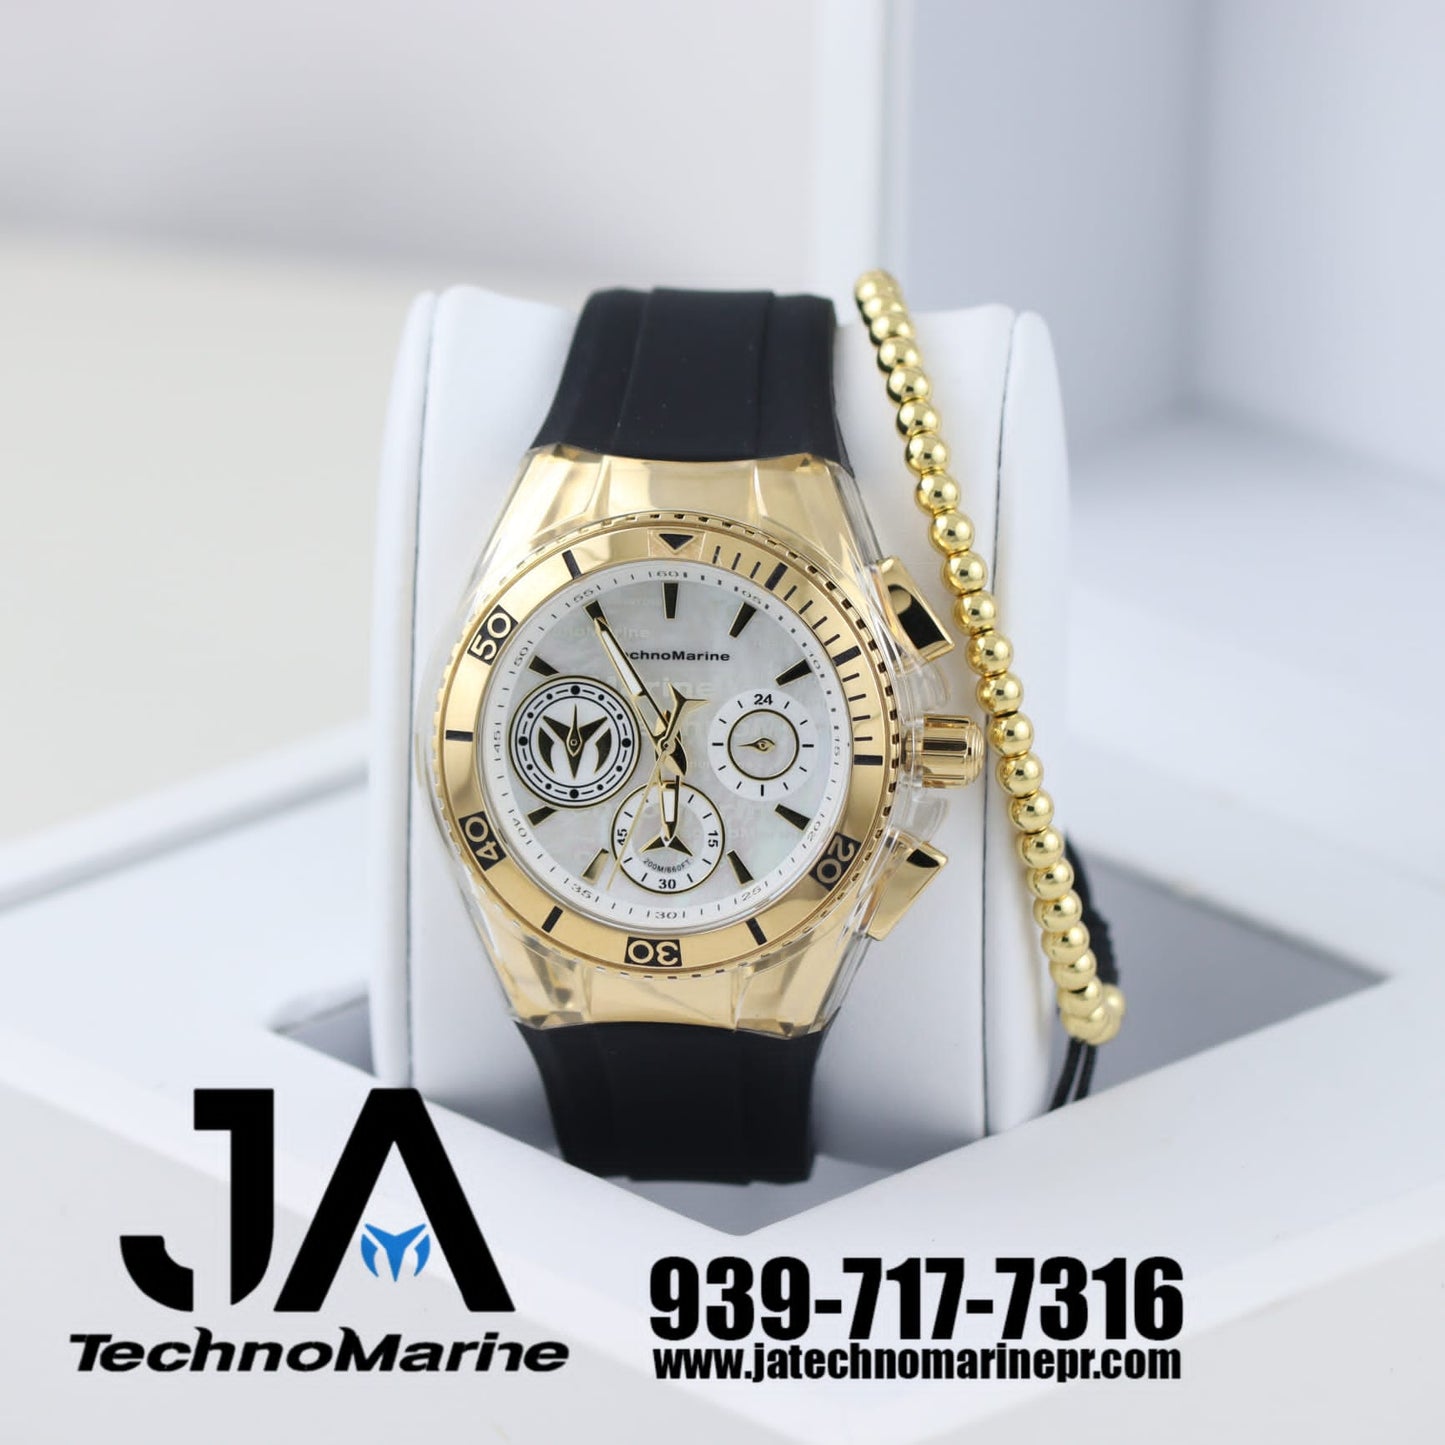 Technomarine Mujer Cruise Quartz Watch gold 40mm